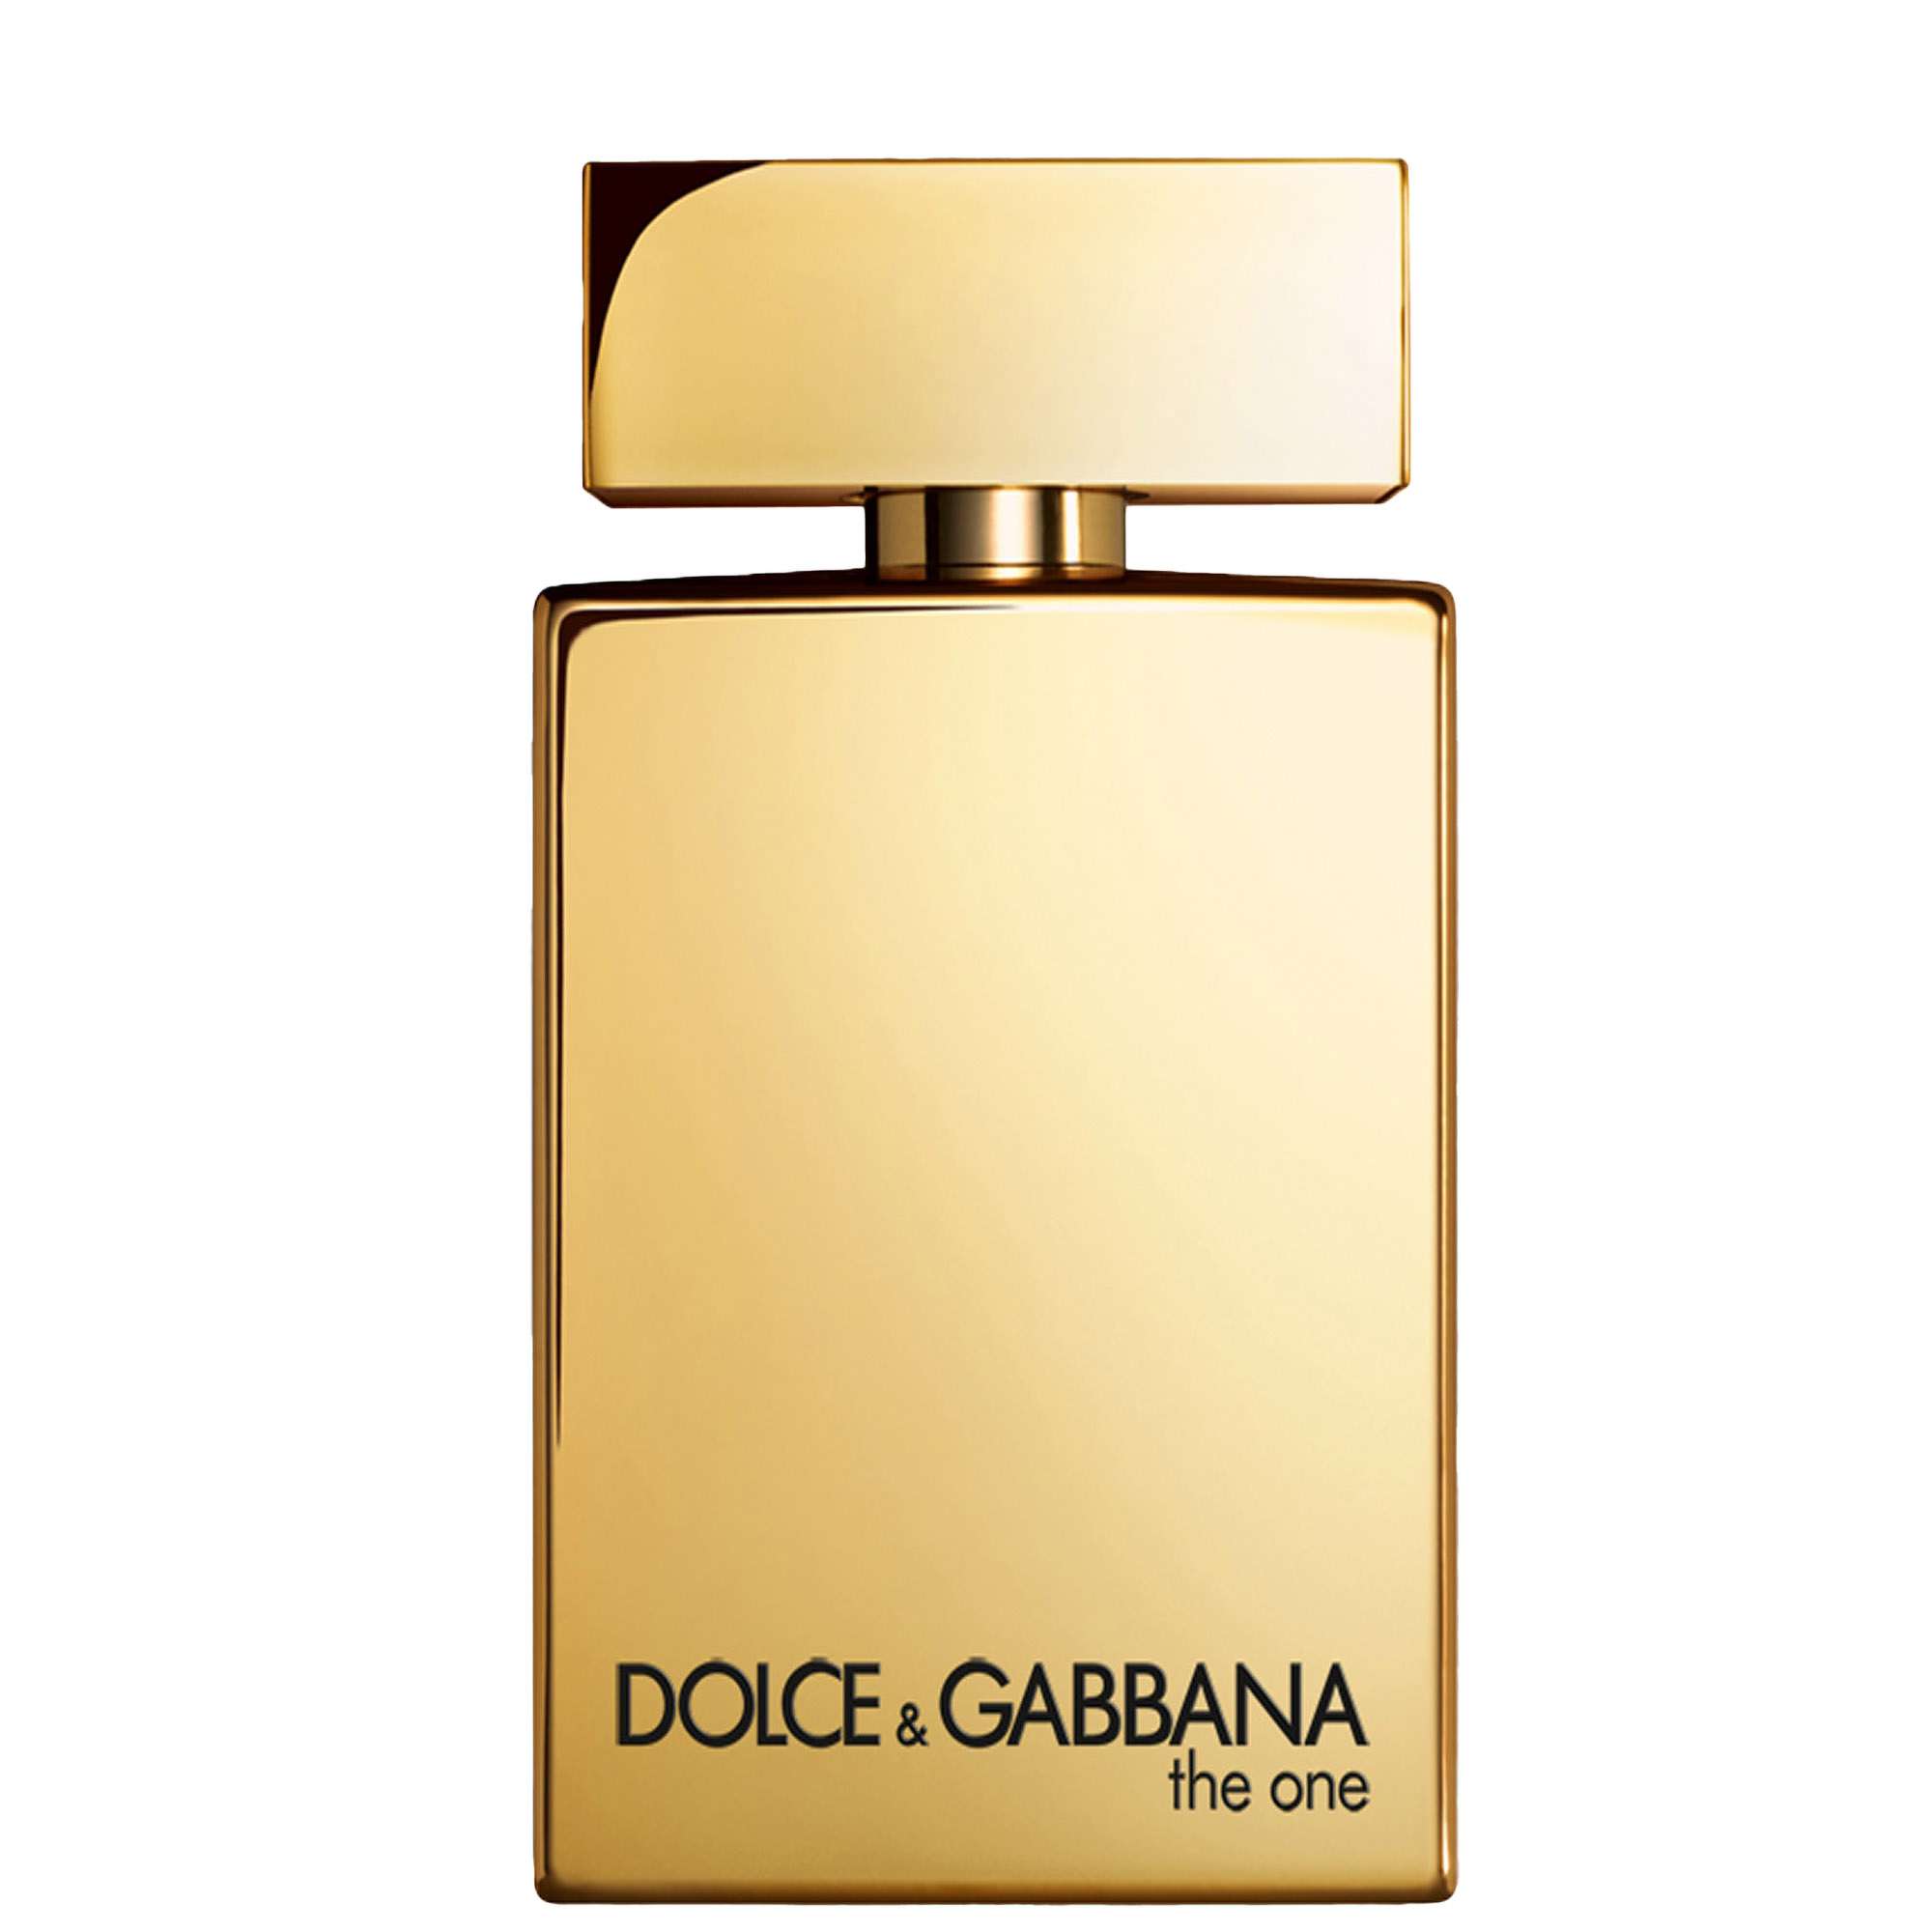 Dolce&Gabbana The One Pour Homme Gold Eau de Parfum Intense Spray 50ml